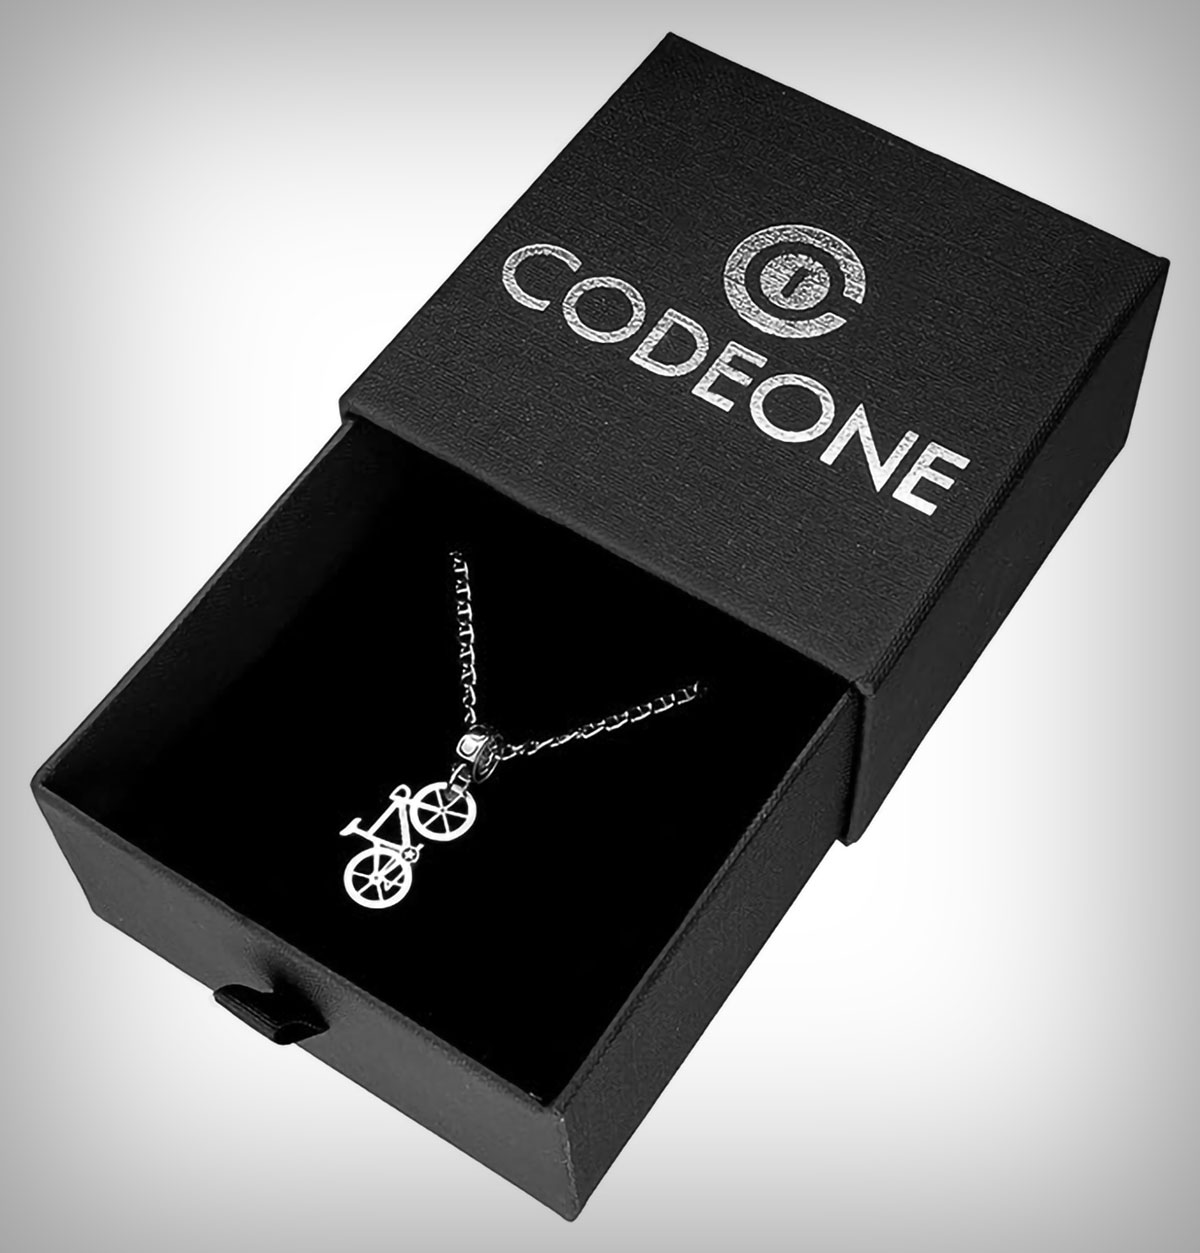 Codeone, bicicletas y otros componentes en forma de joyas para sorprender a cualquier ciclista